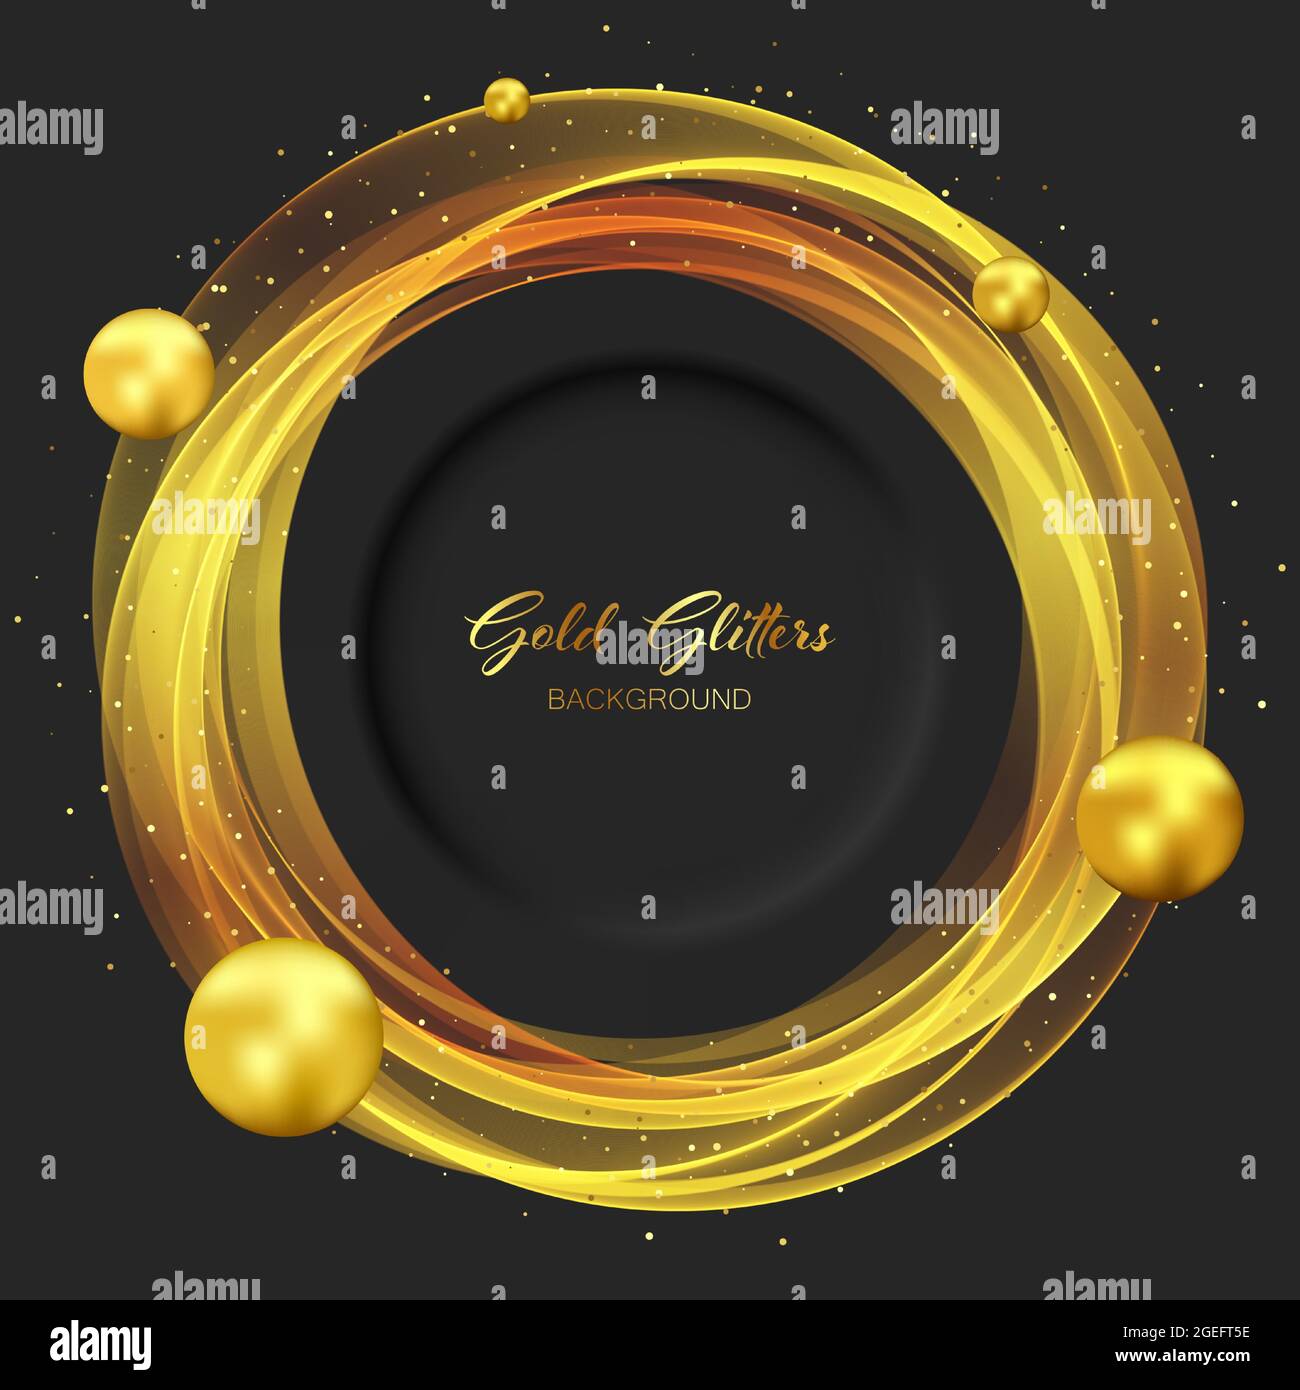 Schwarzer Hintergrund mit goldenen, runden, transparenten Elementen und Goldkugeln. Goldener Glitzer auf dunklem Hintergrund. Stock Vektor